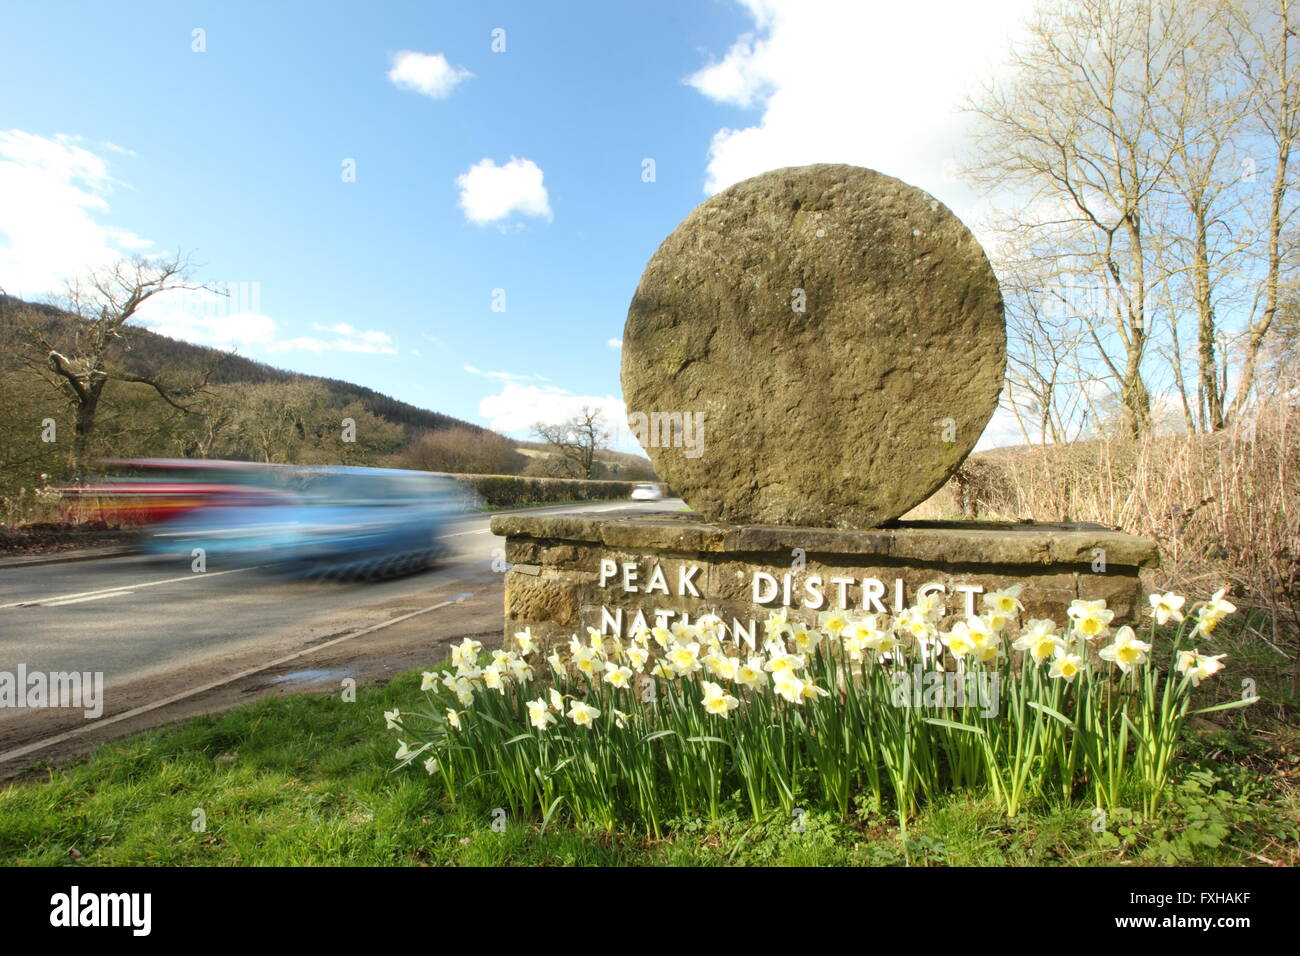 Les voitures roulent passé un boulet la borne frontière dans le parc national de Peak District, Derbyshire, Angleterre Royaume-uni - printemps Banque D'Images